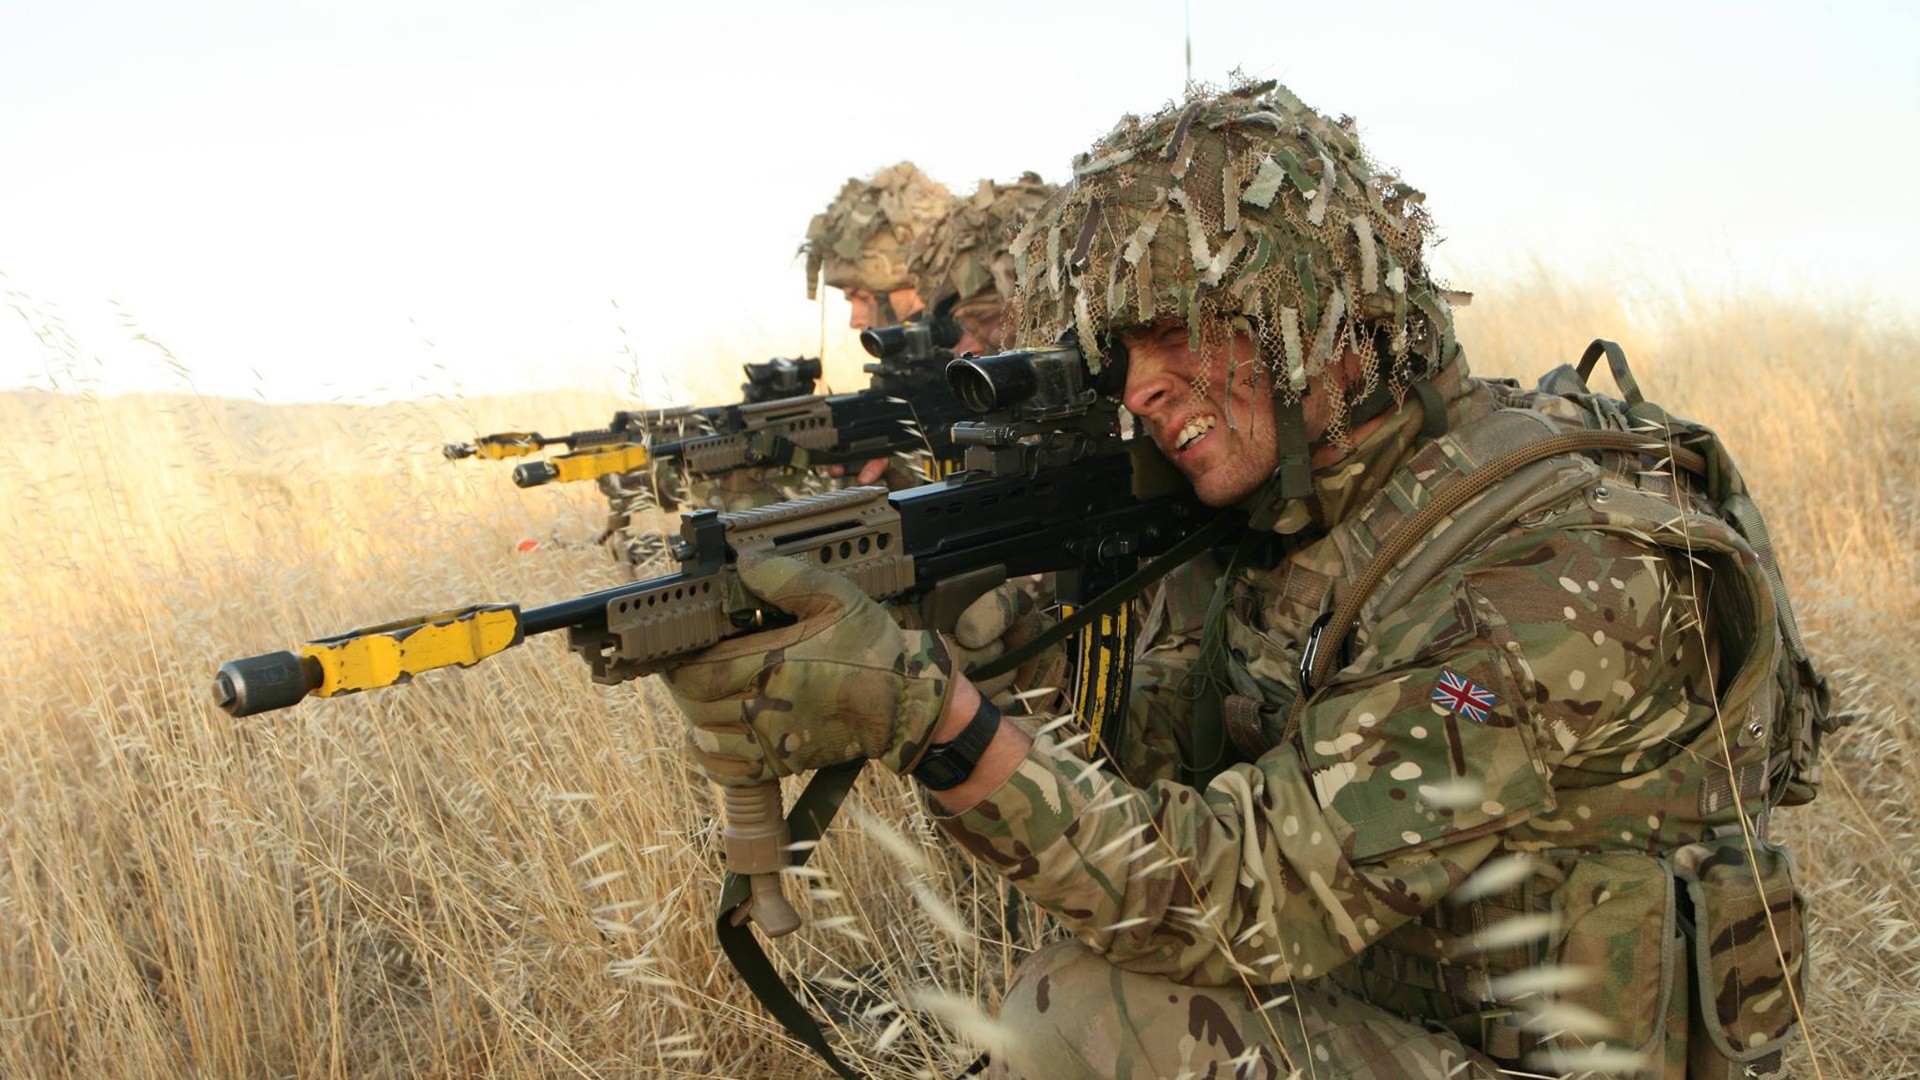 fond d'écran de l'armée britannique,soldat,armée,militaire,camouflage militaire,infanterie